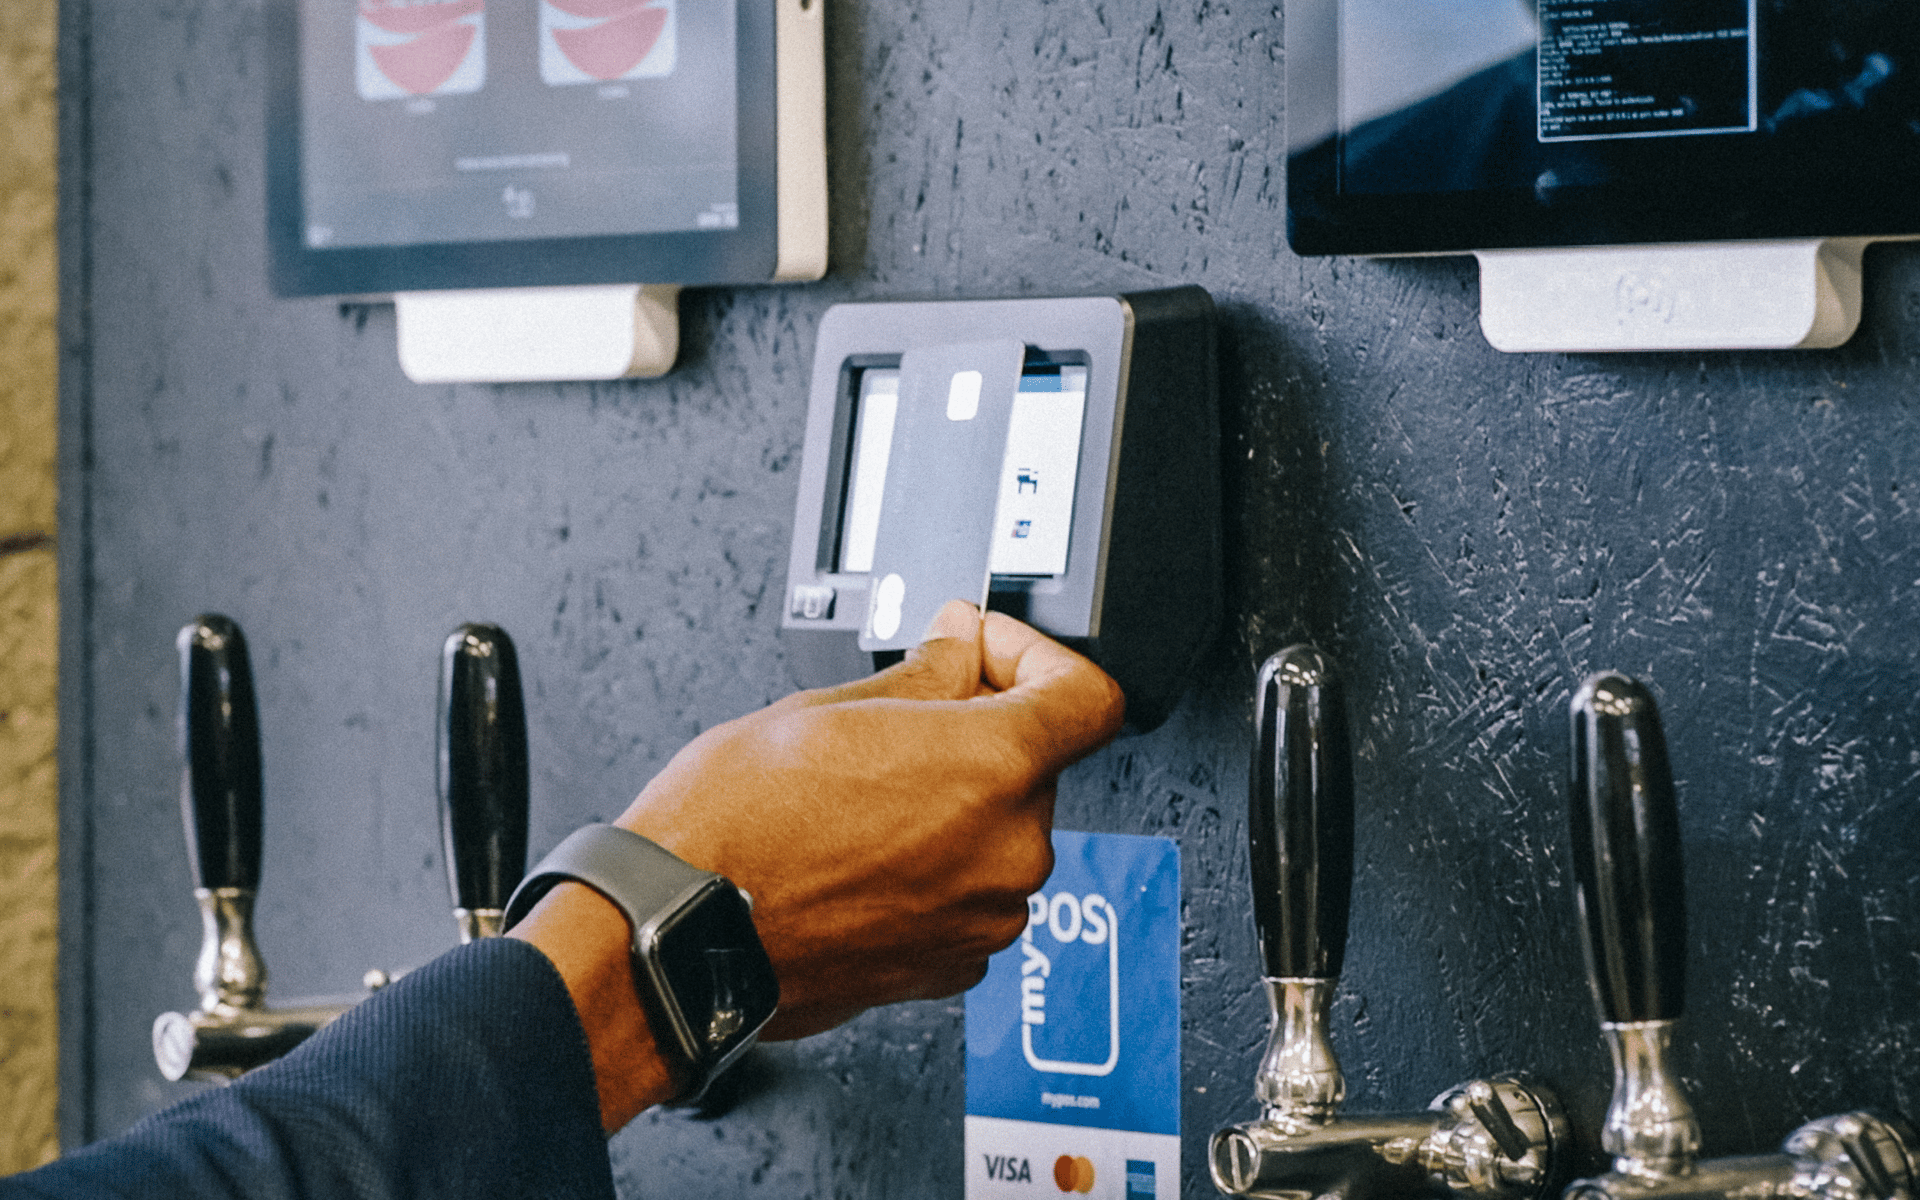 DRINKOTEC integriert Kartenzahlung in seine Getränkeschankanlagen